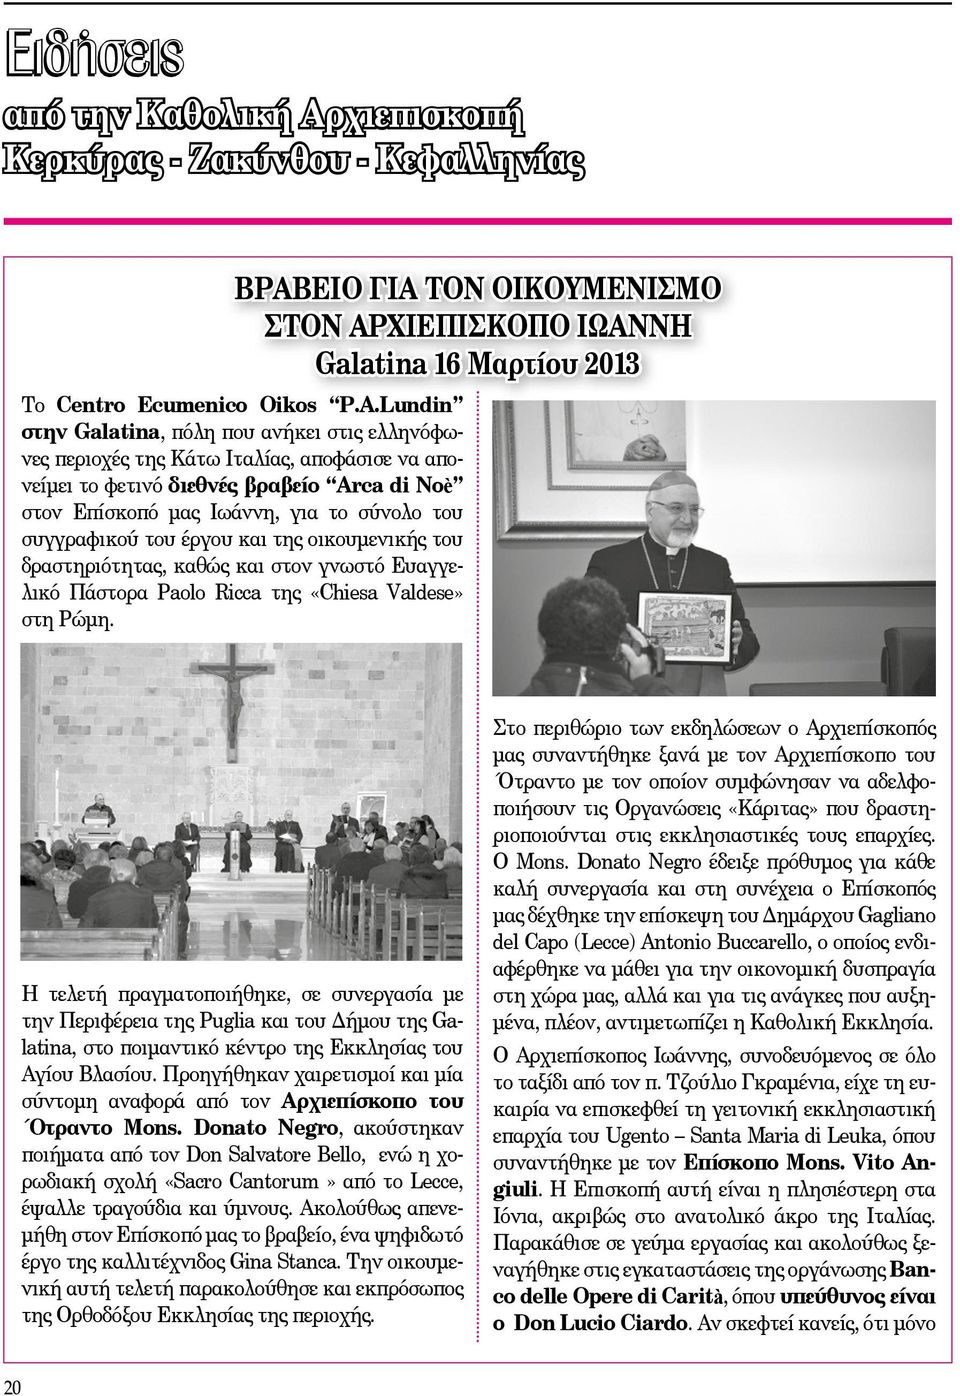 του έργου και της οικουμενικής του δραστηριότητας, καθώς και στον γνωστό Ευαγγελικό Πάστορα Paolo Ricca της «Chiesa Valdese» στη Ρώμη.